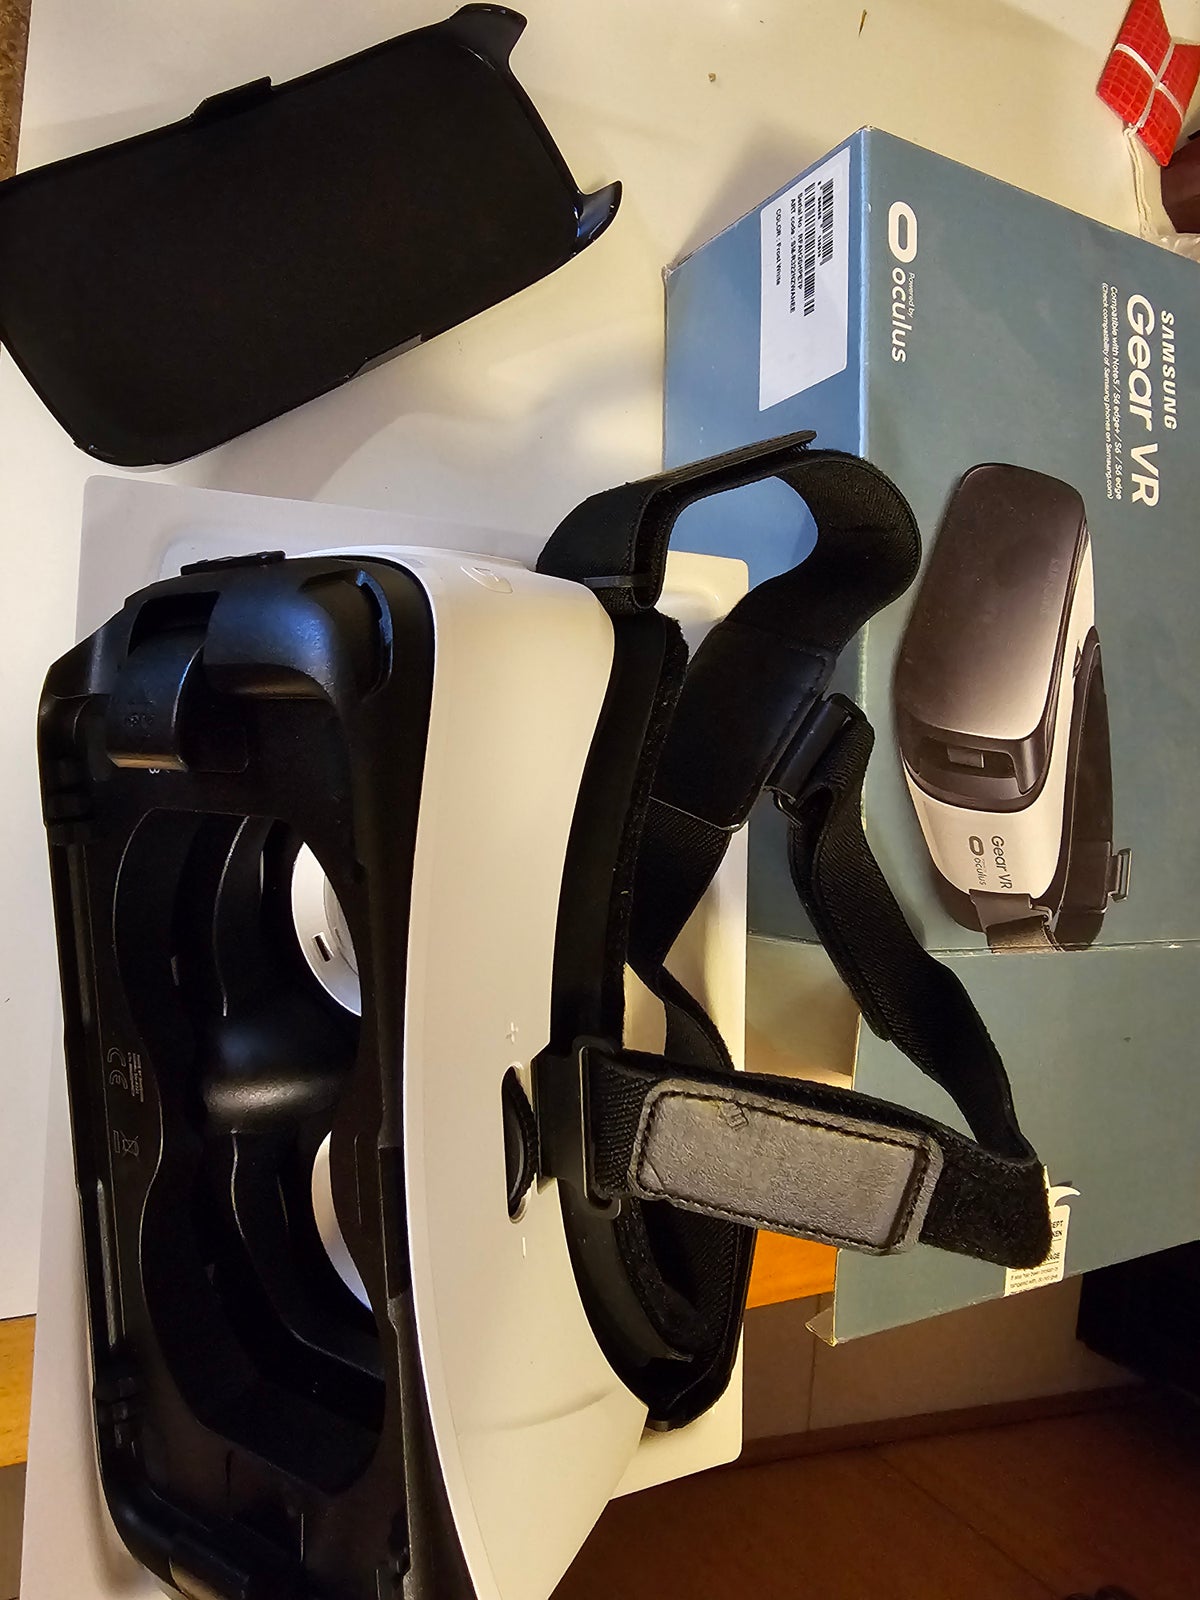 Andet tilbehør, amsung gear VR brille, Notes5,S6